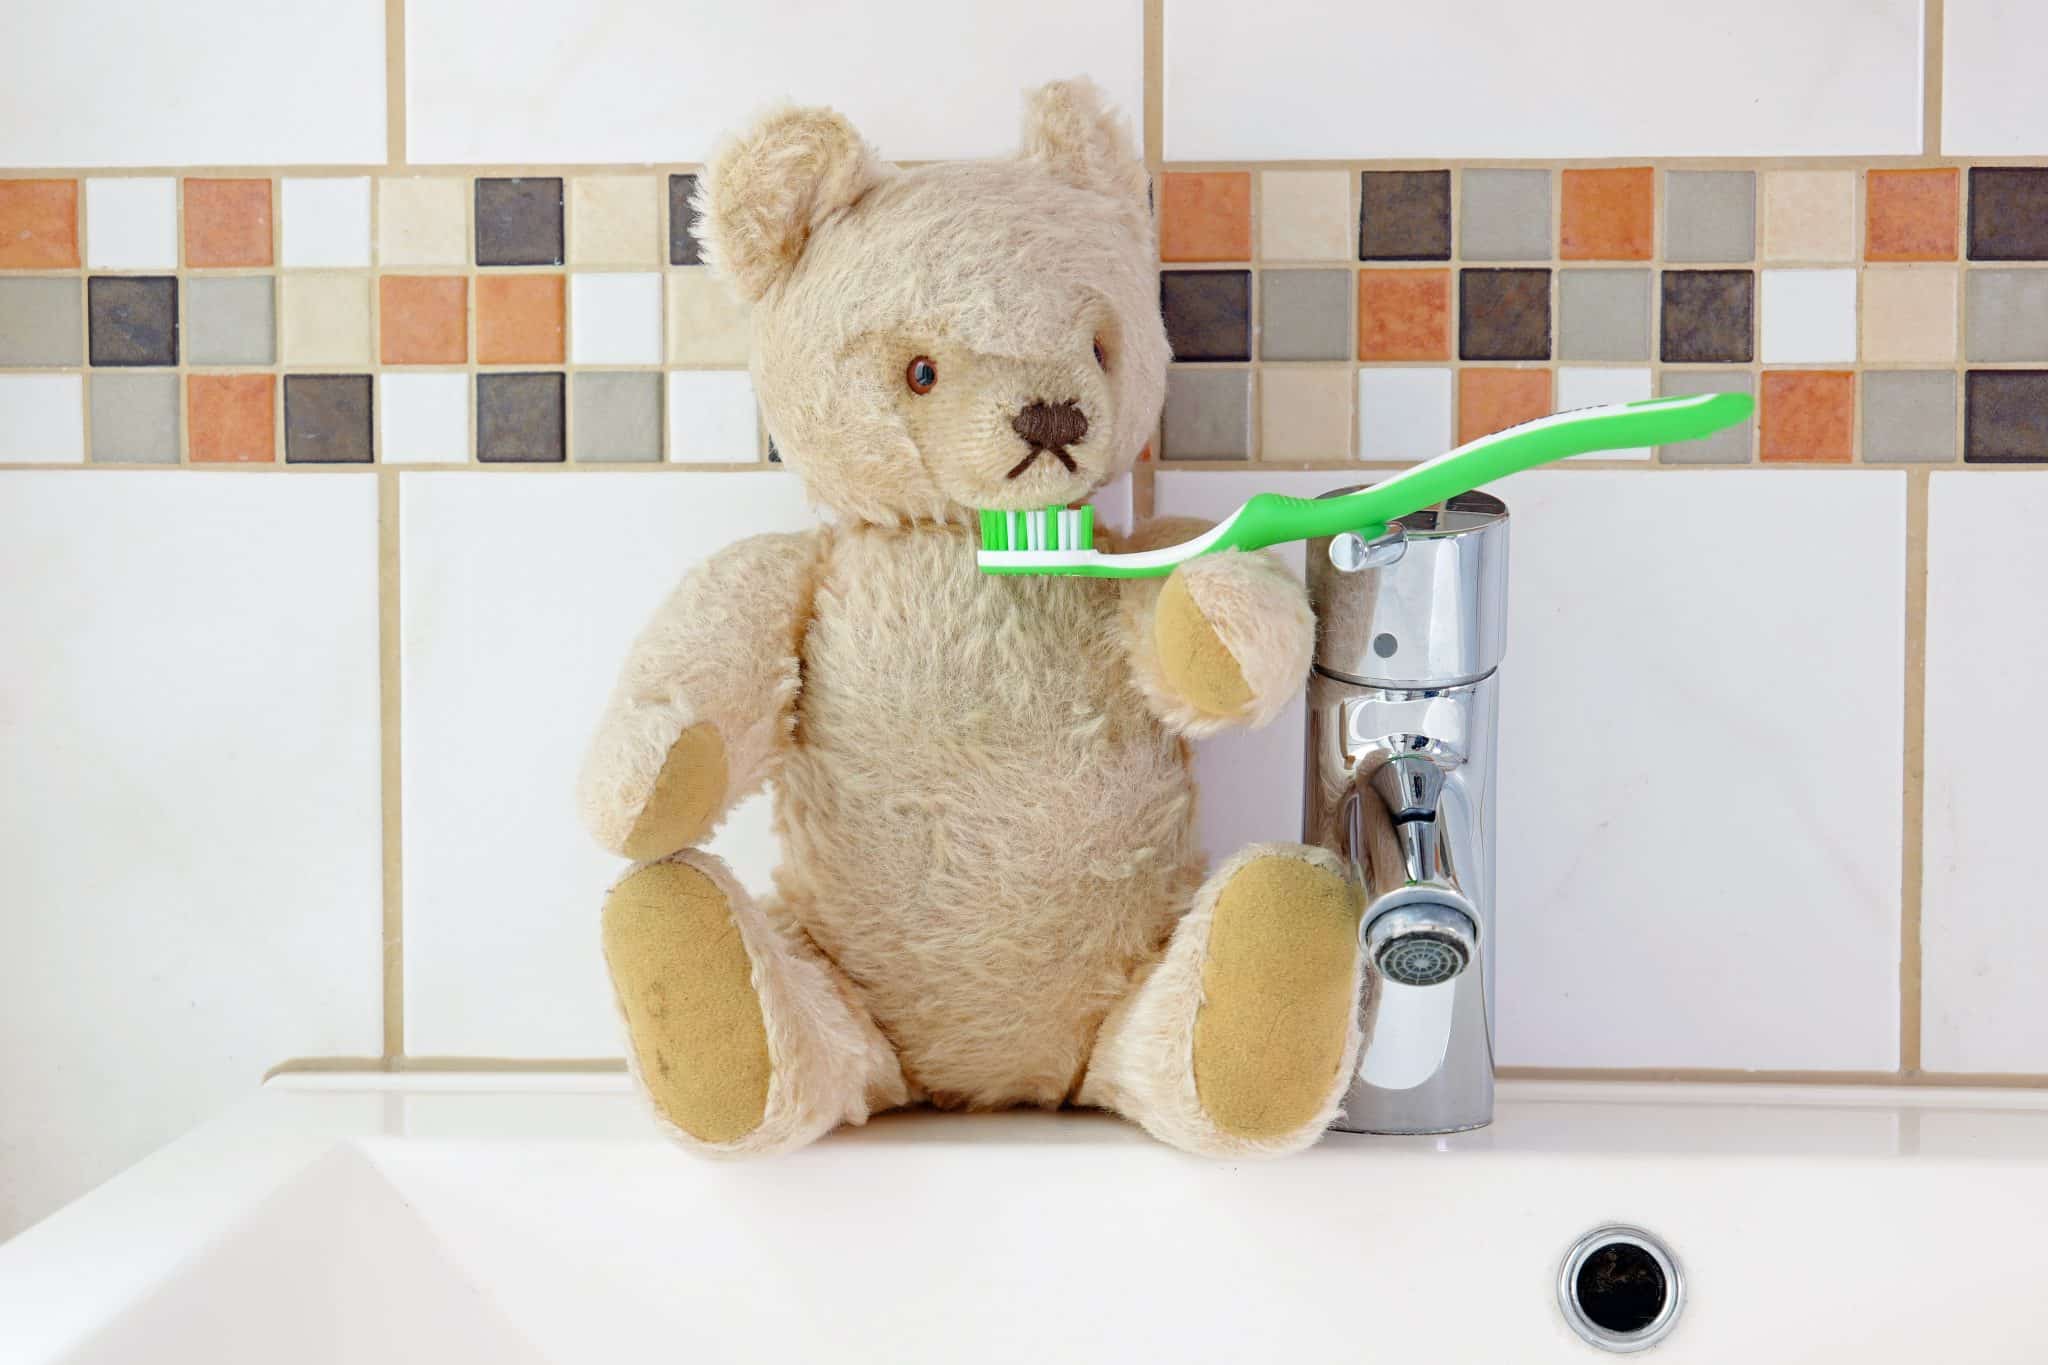 Detailaufnahme eines Waschbeckens, auf dem ein Teddybär sitzt, der eine Zahnbürste auf dem Arm hat